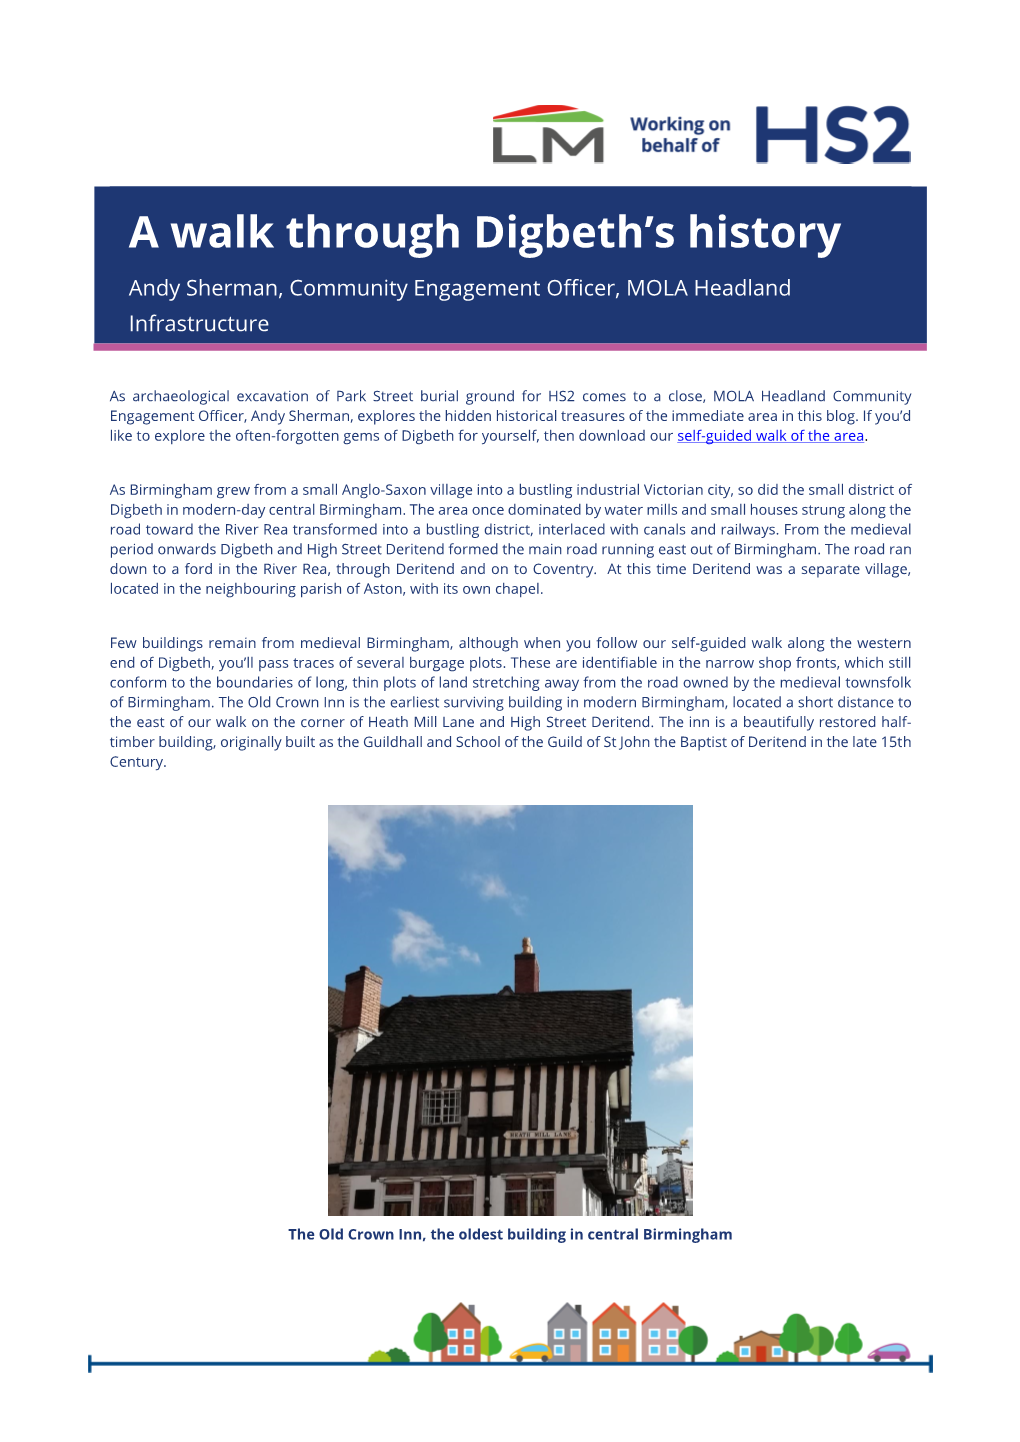 A Walk Through Digbeth's History